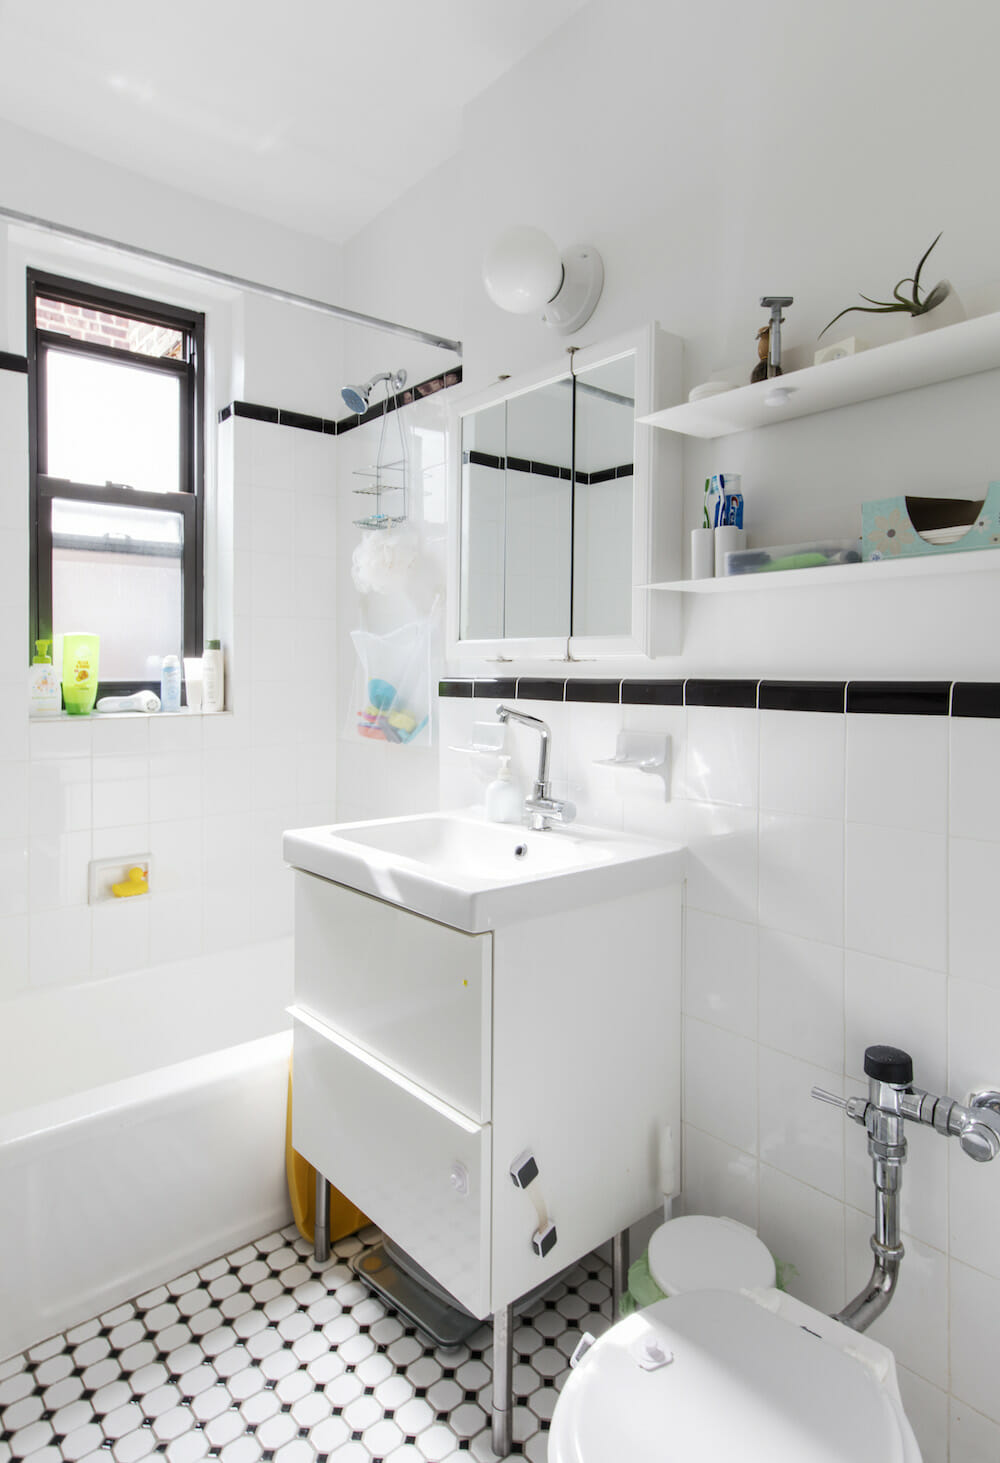 Bathroom Vanities - Bathroom Sink Vanities - IKEA